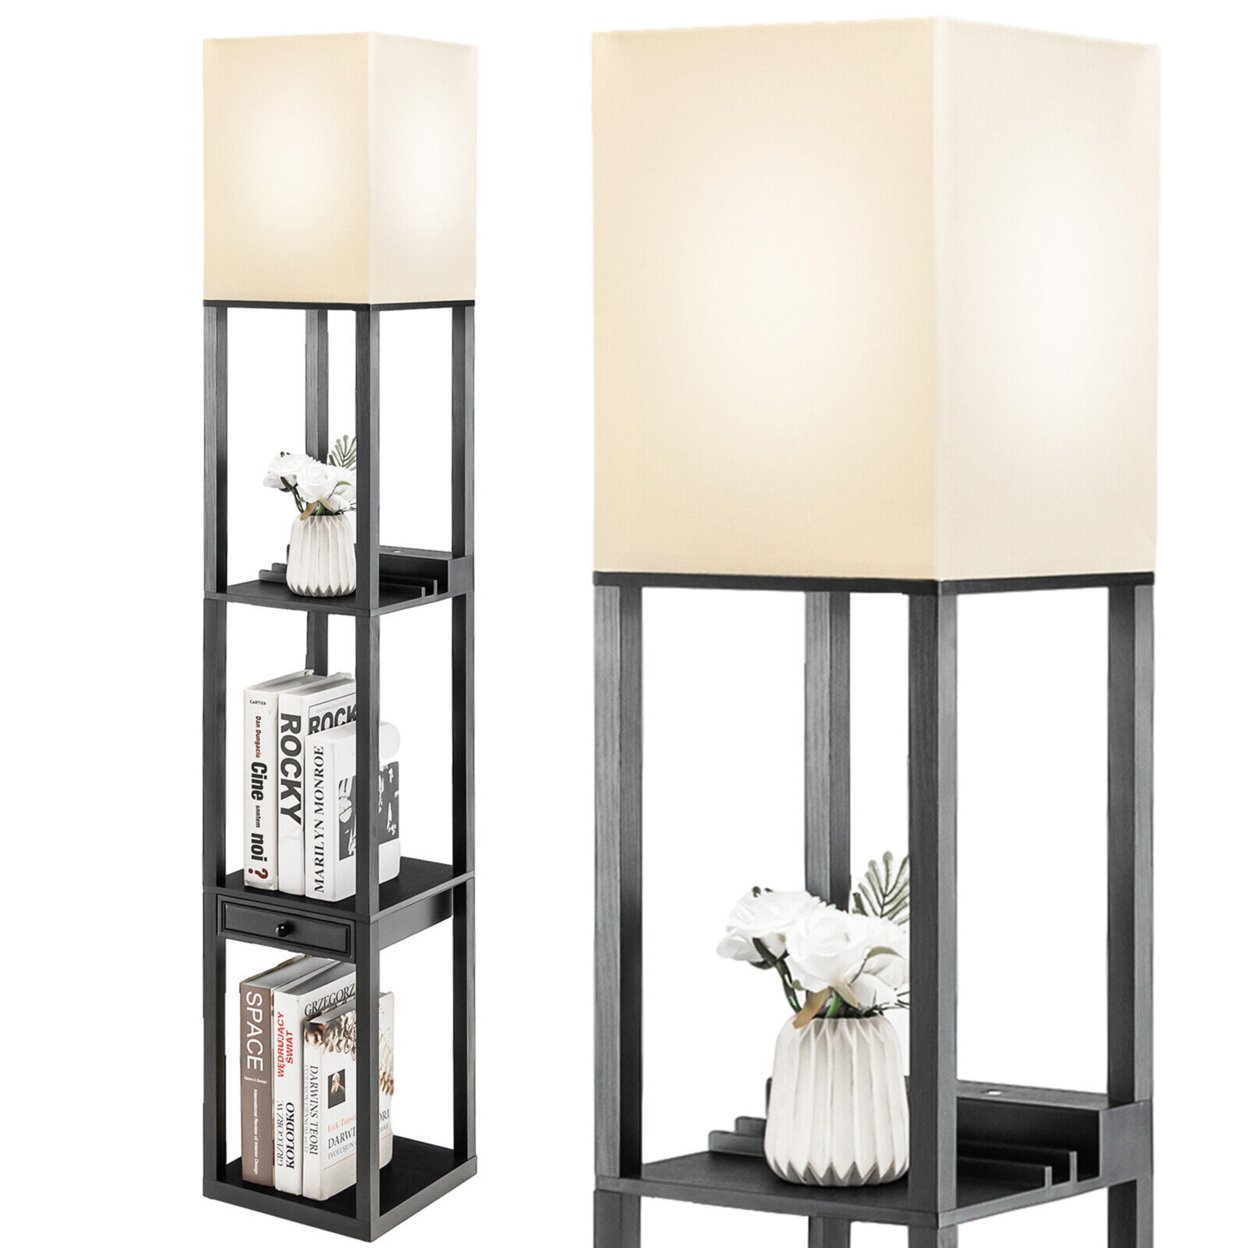 Modern Floor Lamp W/ Shelves And Drawer,Shelf Floor Lamp W/ Adjustable Brightness